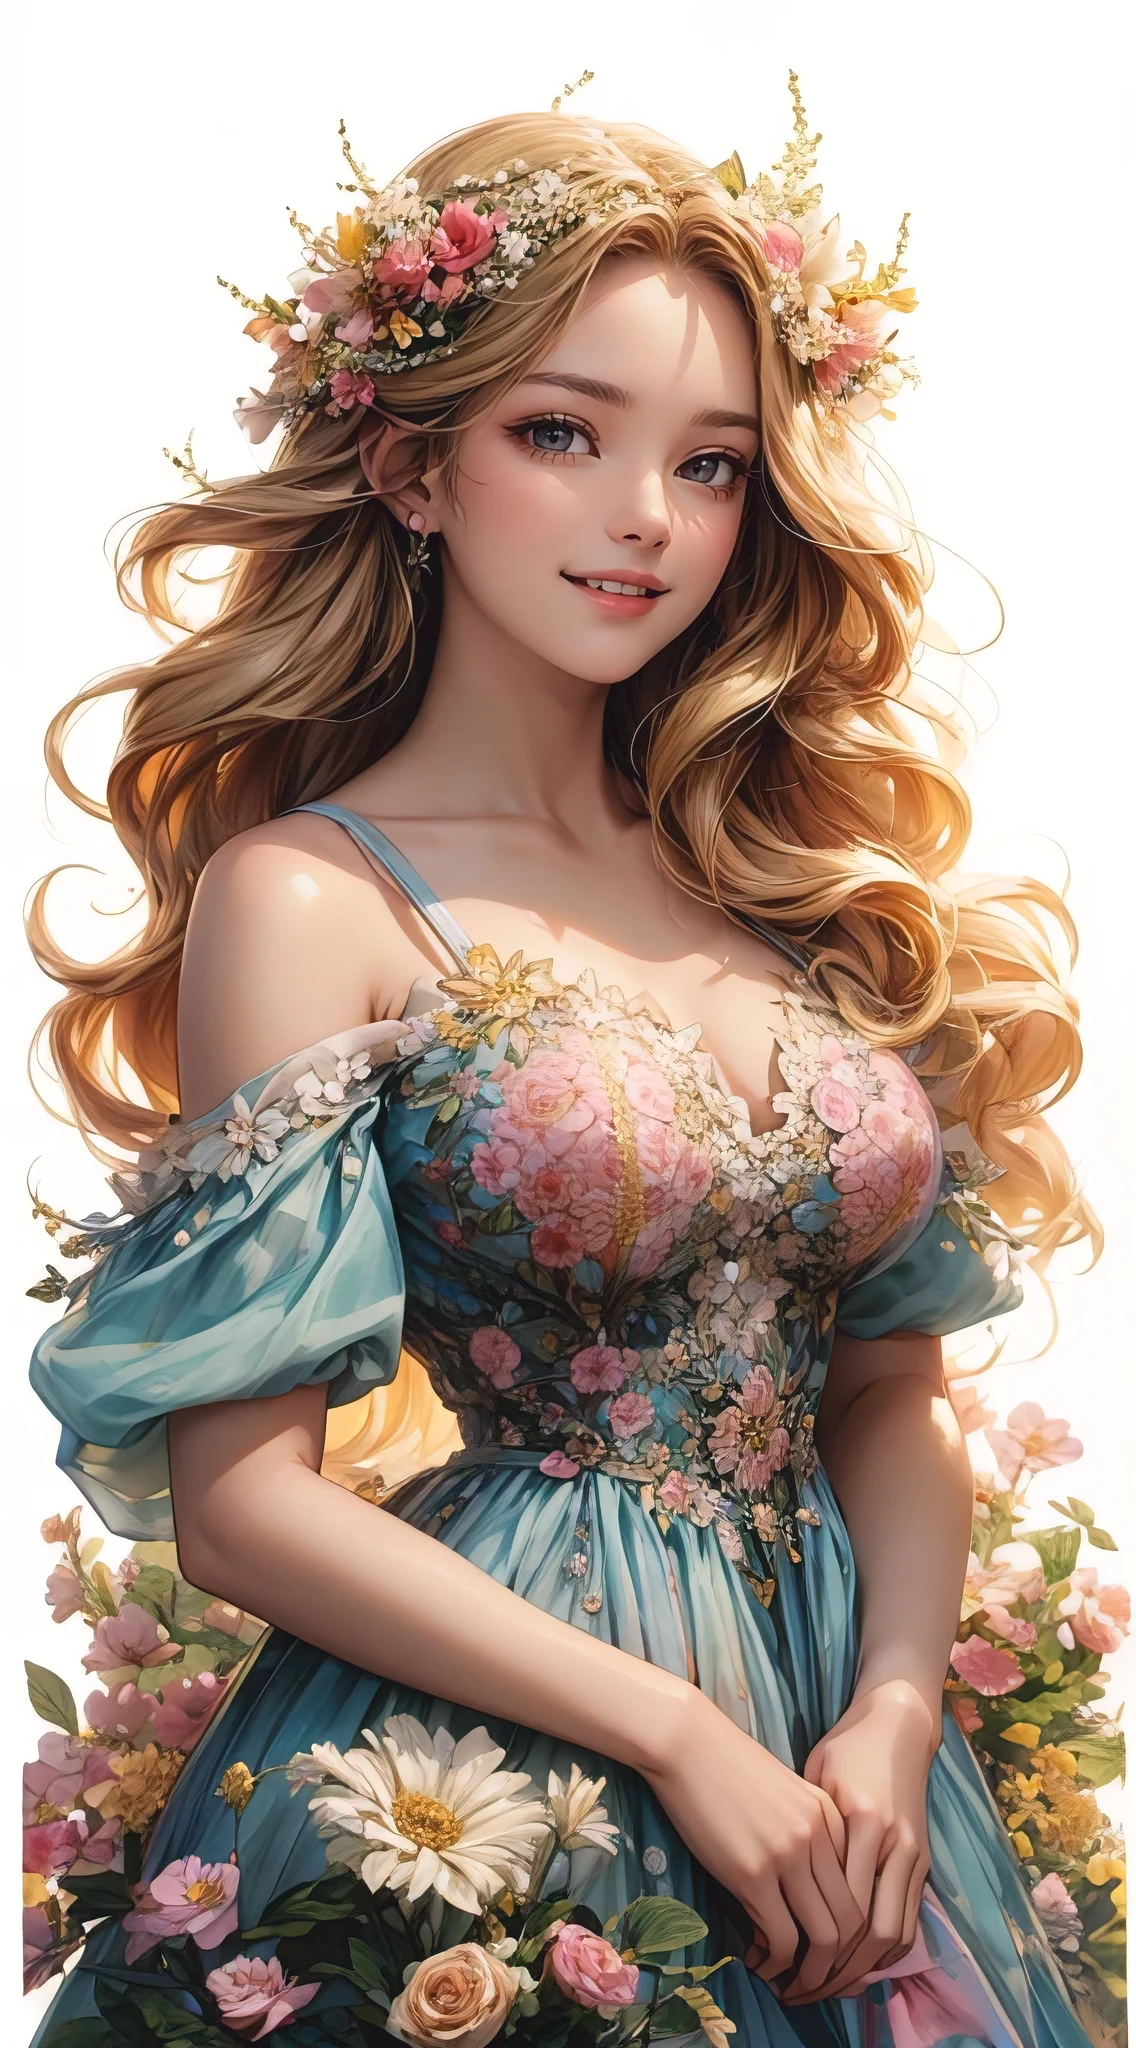 아름다운 여인의 놀라운 초상화, 여름의 정수를 표현하다. 그녀는 섬세한 꽃무늬 왕관으로 장식된 긴 웨이브 금발 머리를 가지고 있습니다., 그리고 그녀의 피부는 햇빛에 그을린 광채로 빛납니다. 여자는 흐르는 옷을 입고 있다, 그녀를 둘러싼 화사한 여름 꽃들과 자연스럽게 어우러지는 파스텔 컬러의 드레스. 그녀의 눈은 계절의 따뜻함과 기쁨으로 반짝인다, 그리고 그녀의 미소는 태양처럼 빛난다.